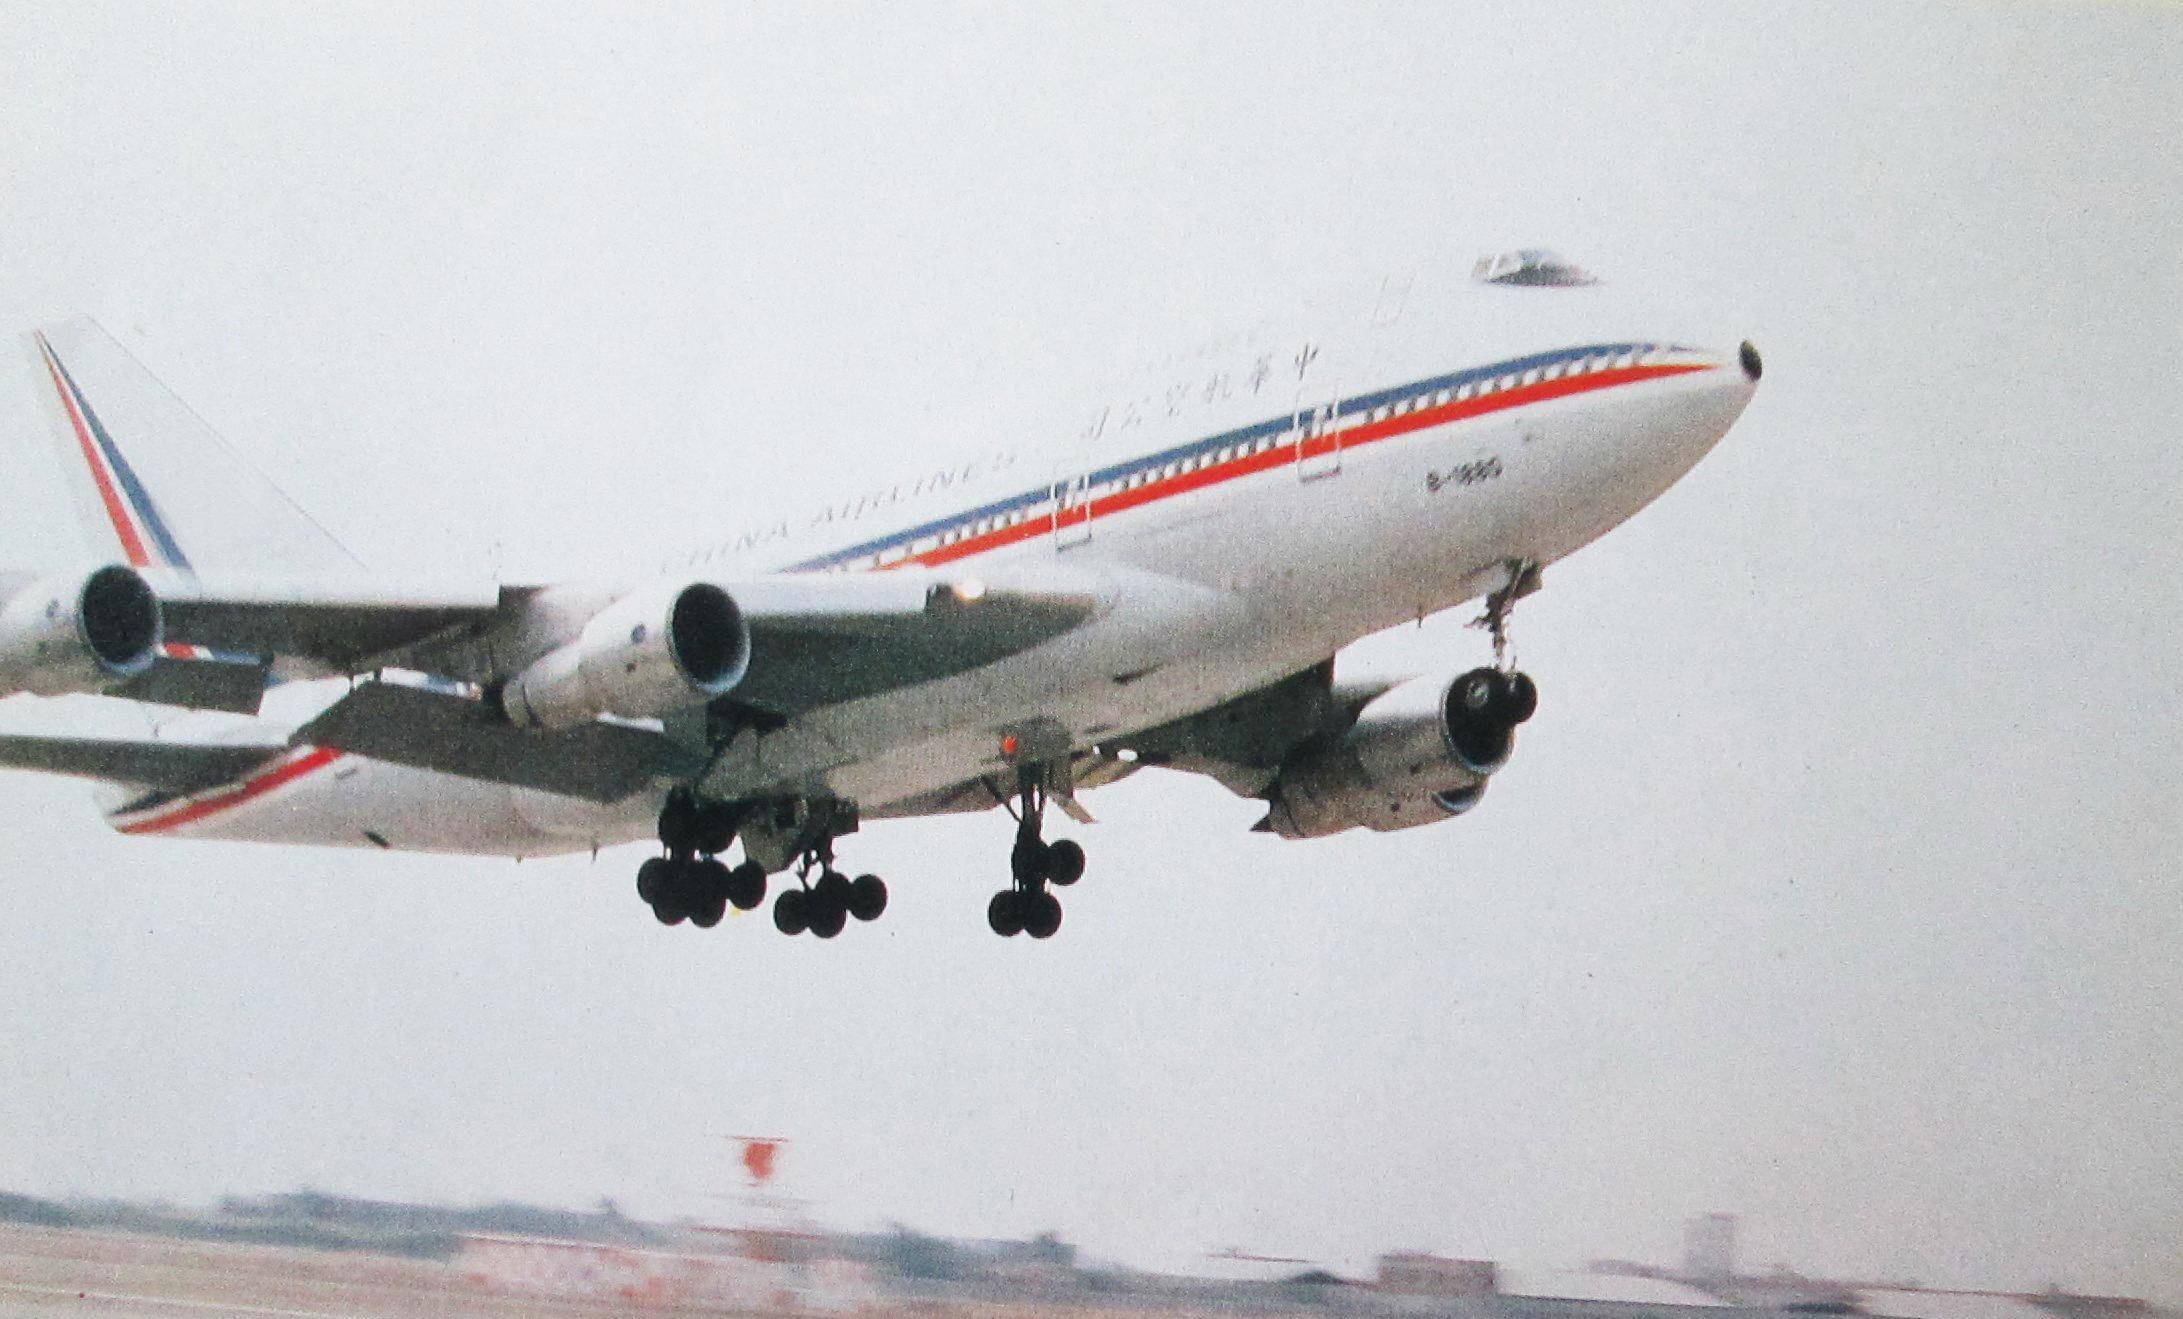 中华航空旧涂装747图片